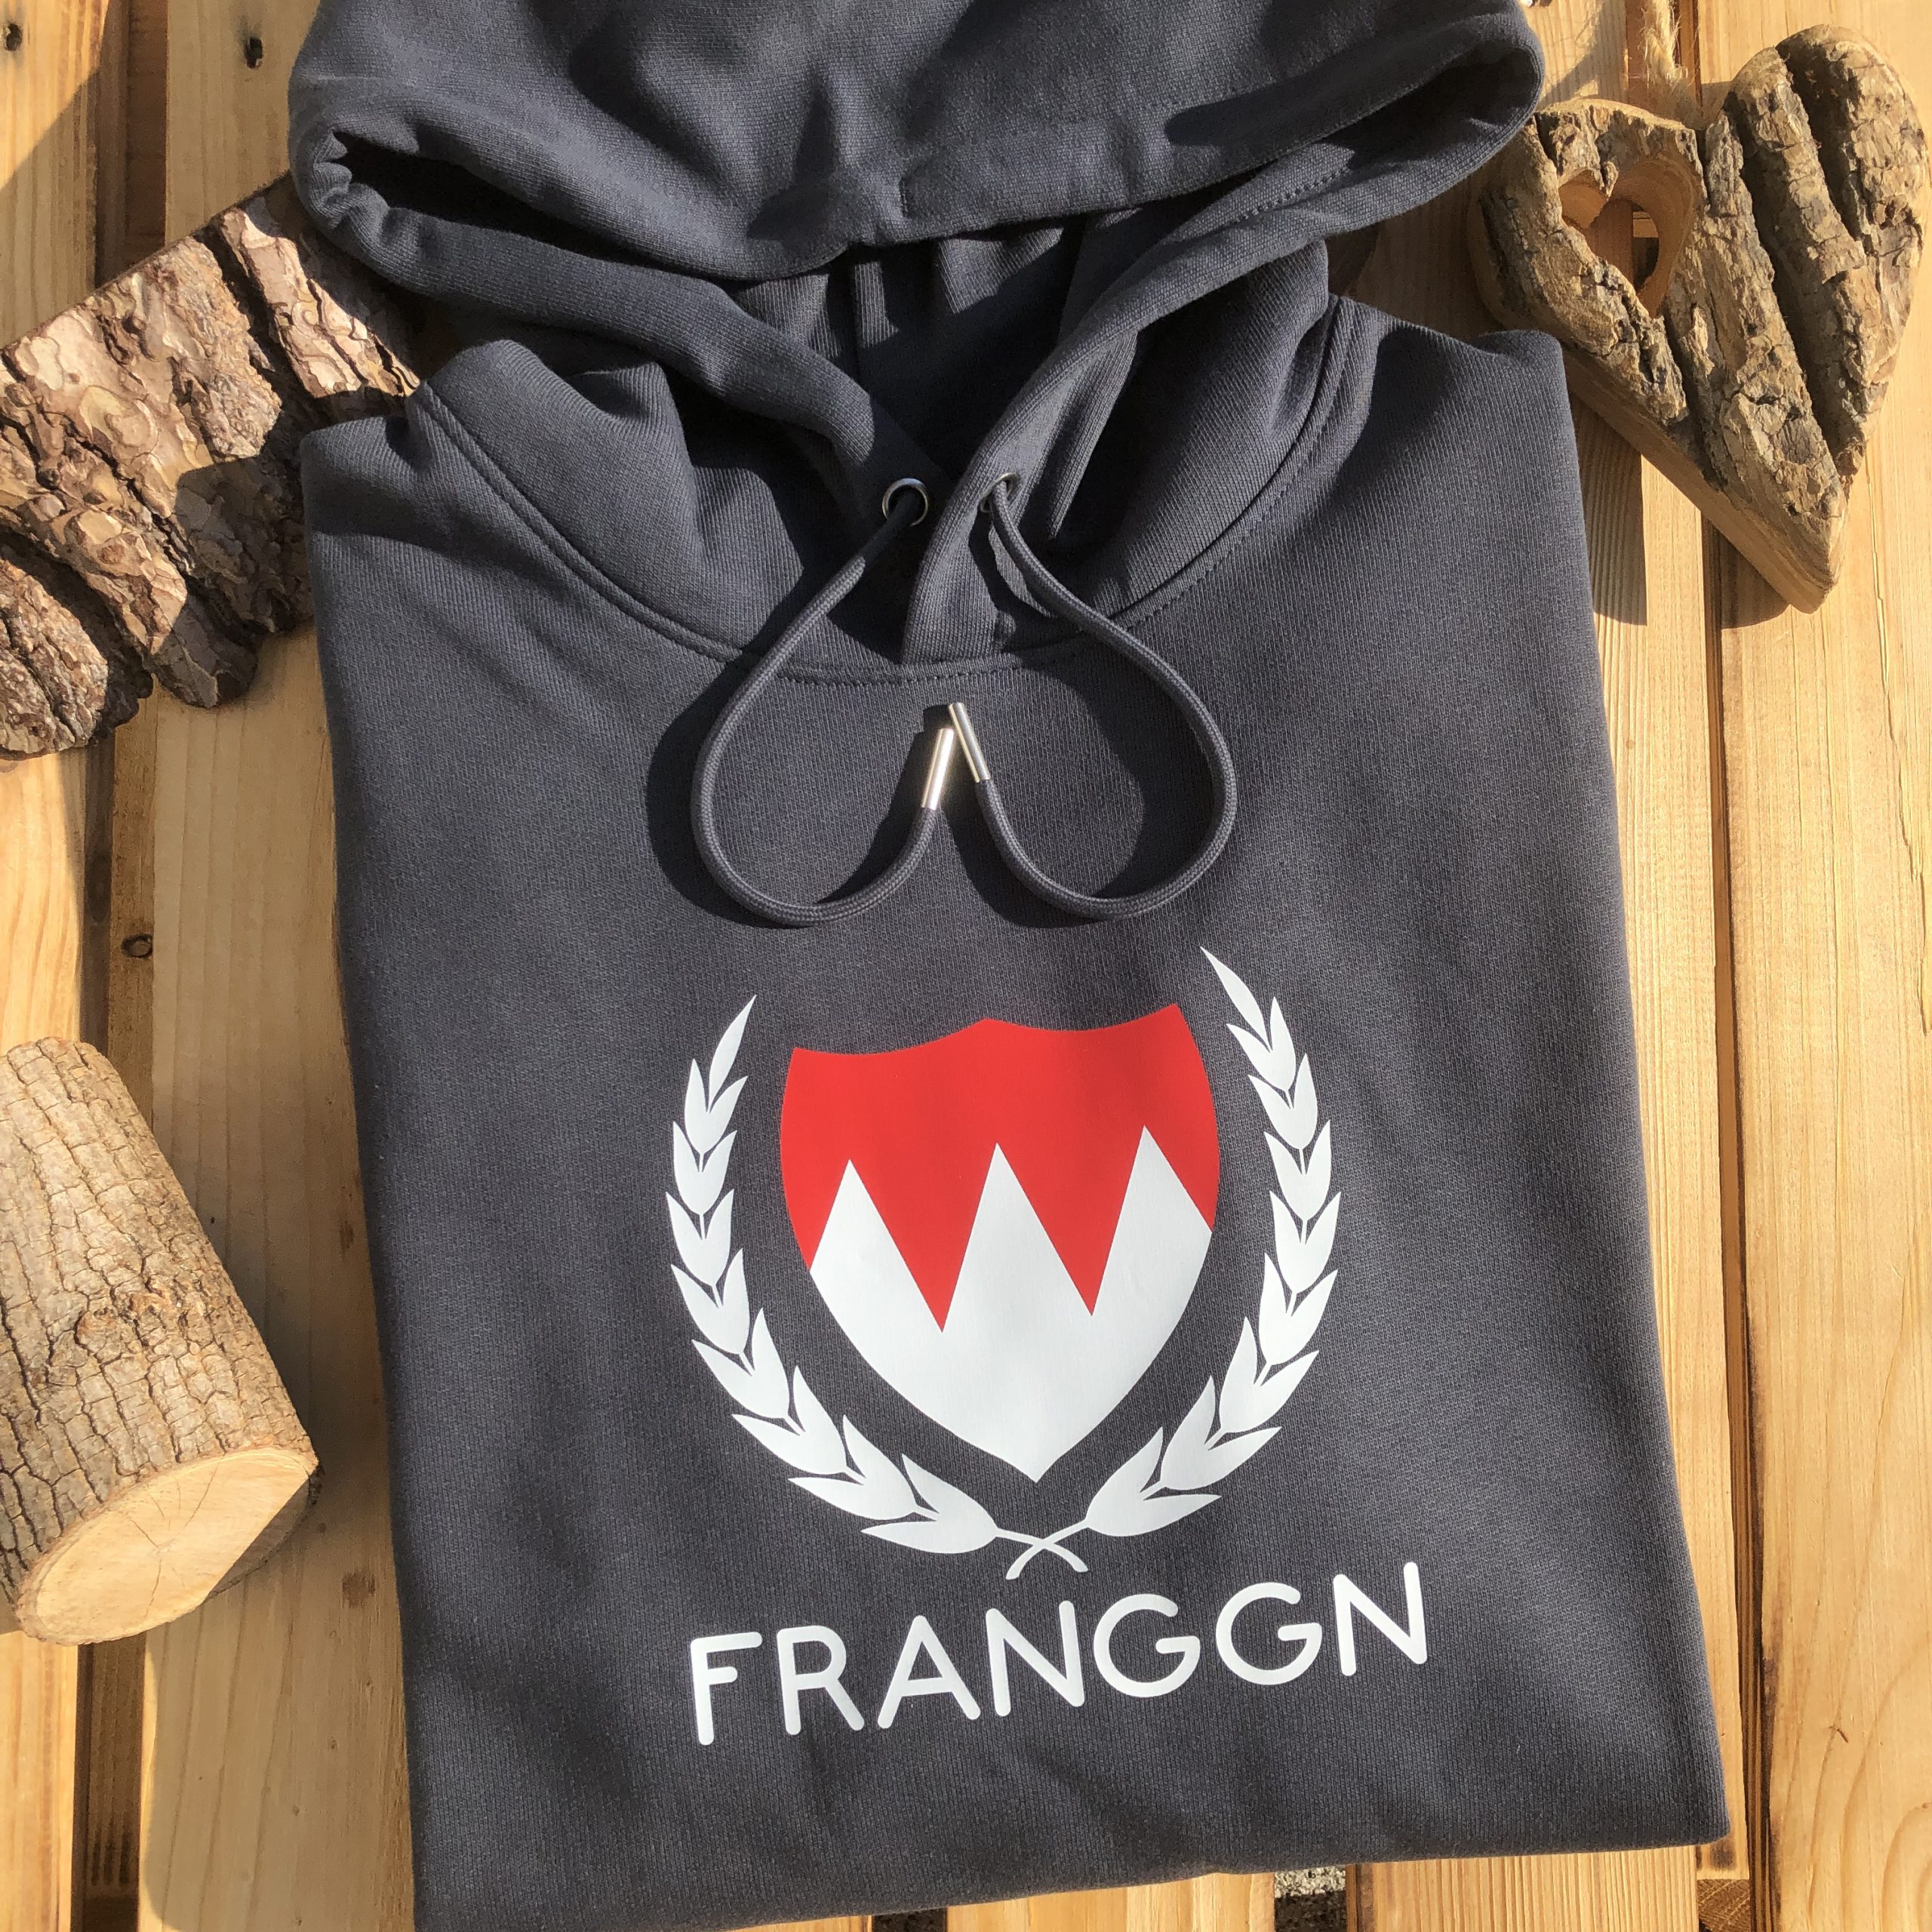 Franggn Hoodie mit Franken Wappen Fränkische Hoodies Würzburg Shop